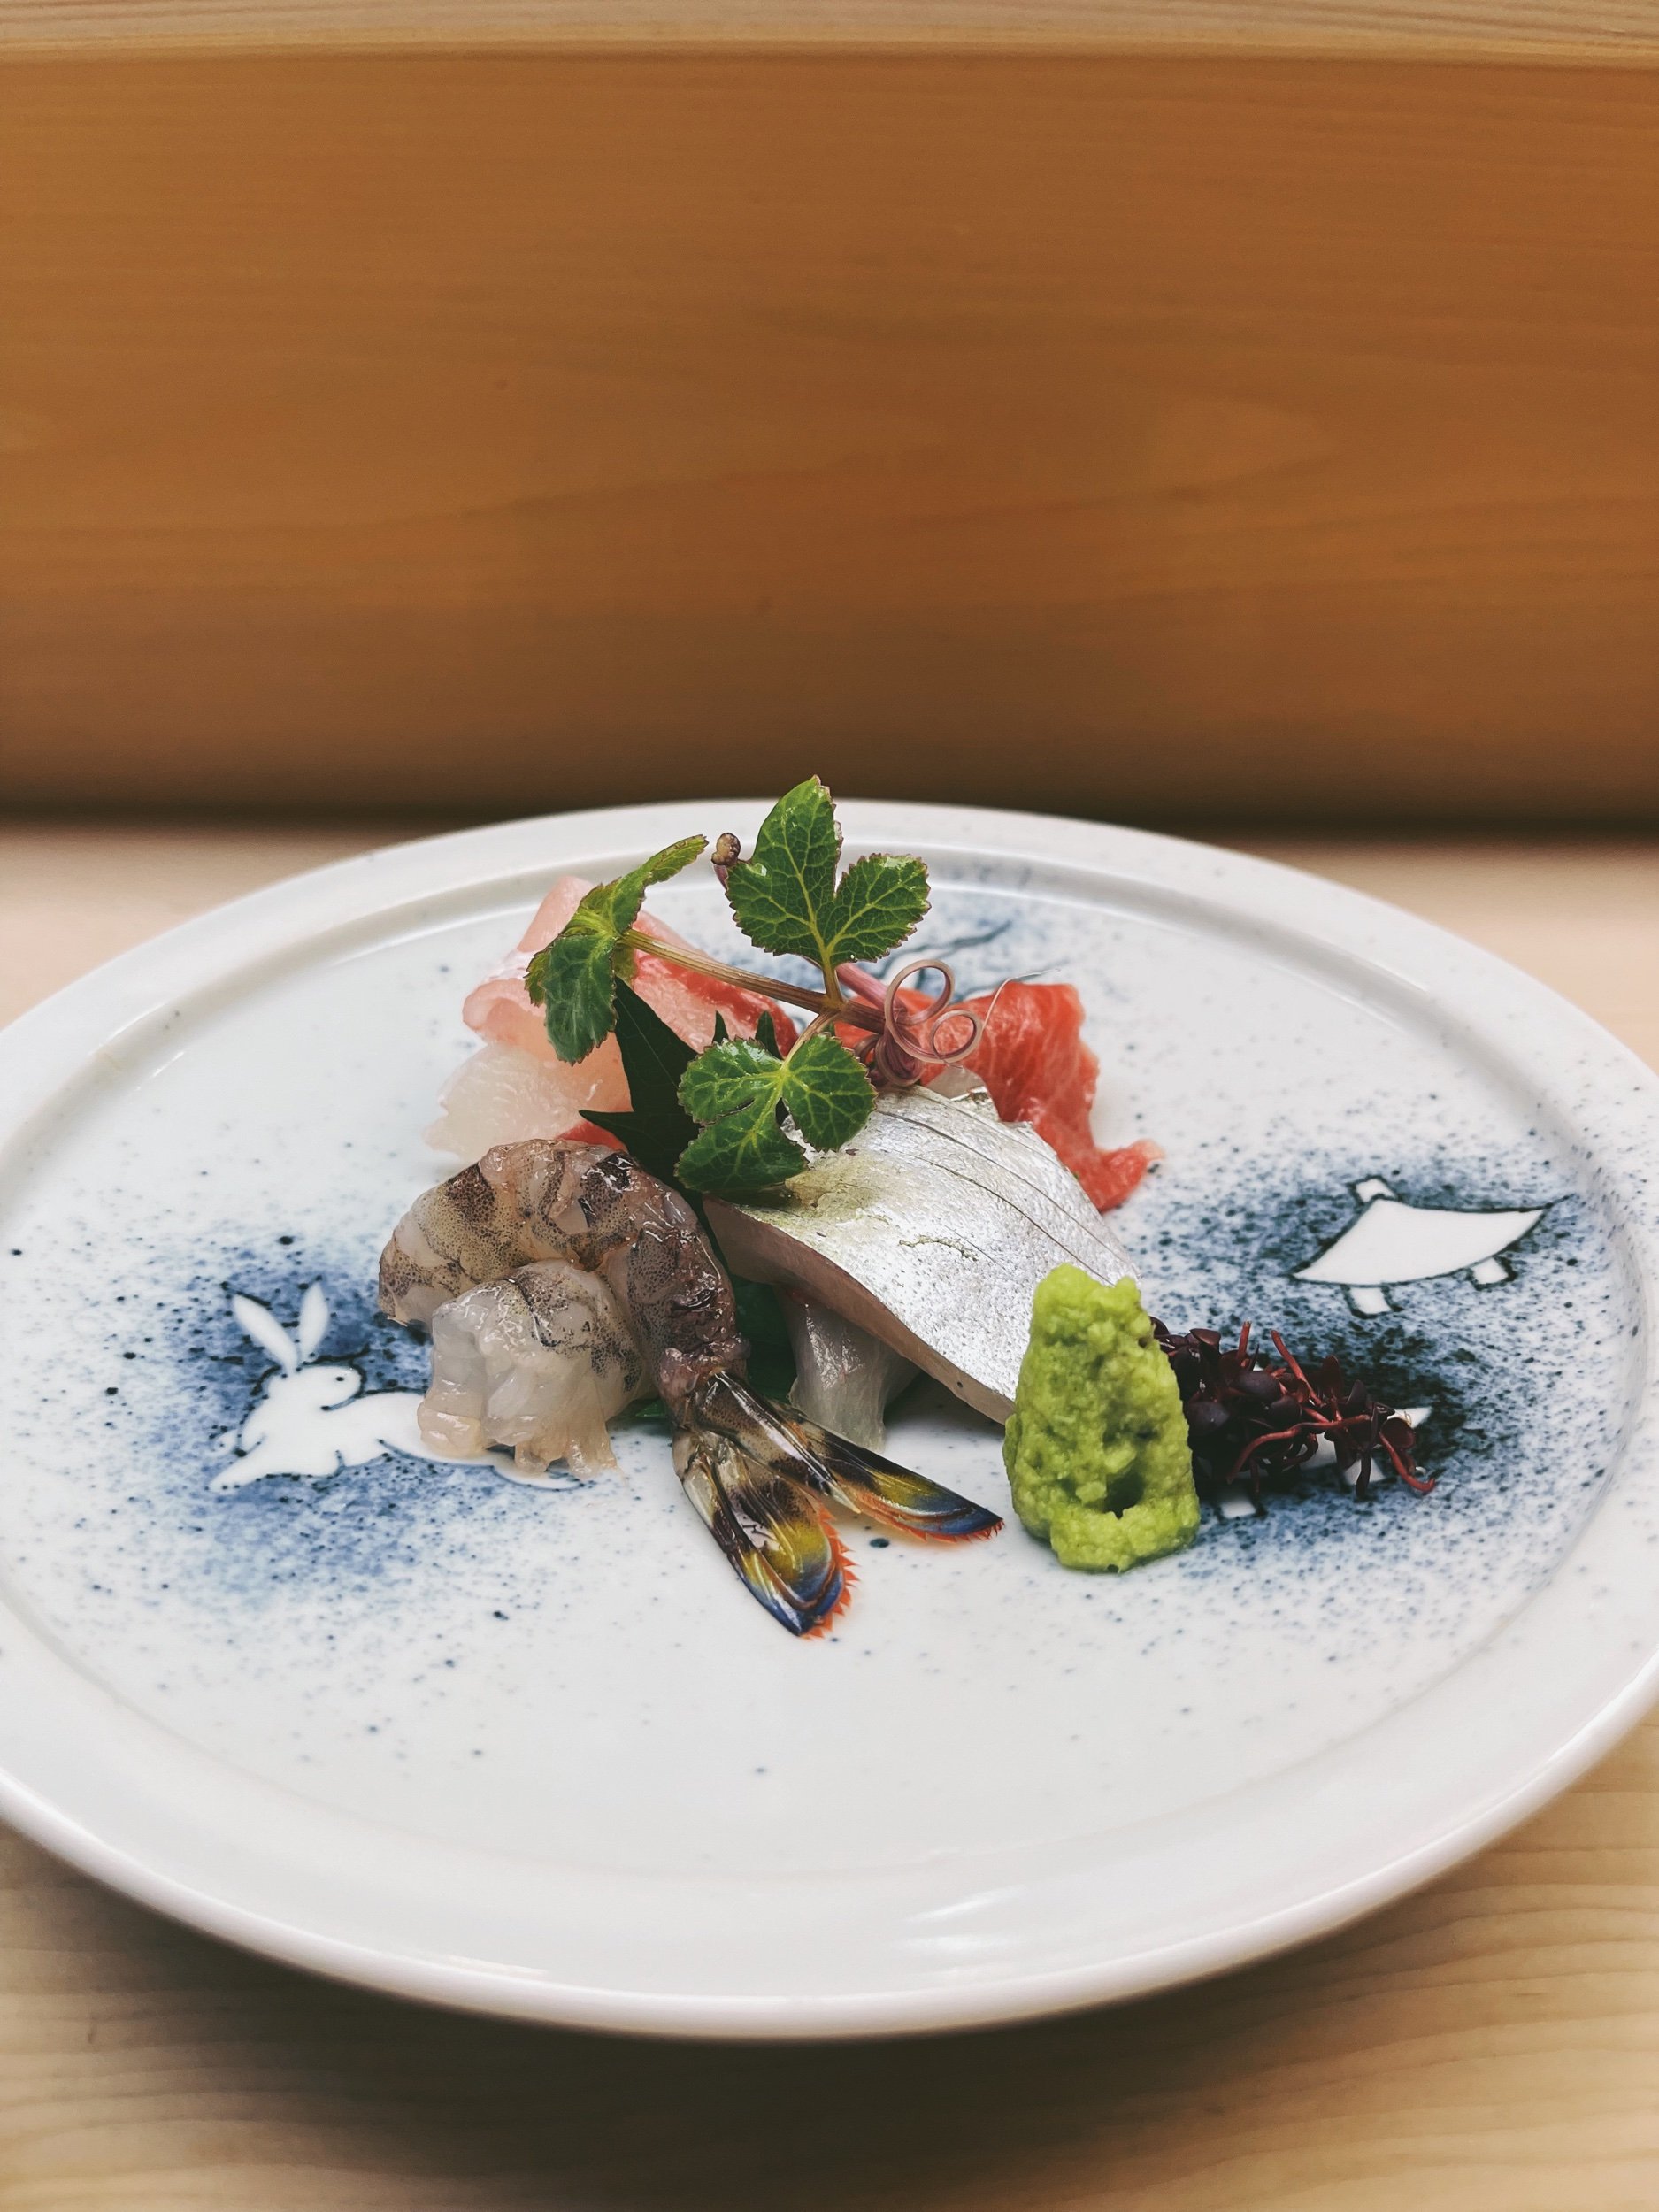 sashimi - tai (sea bream), chu-toro (fatty tuna), and karuma prawns